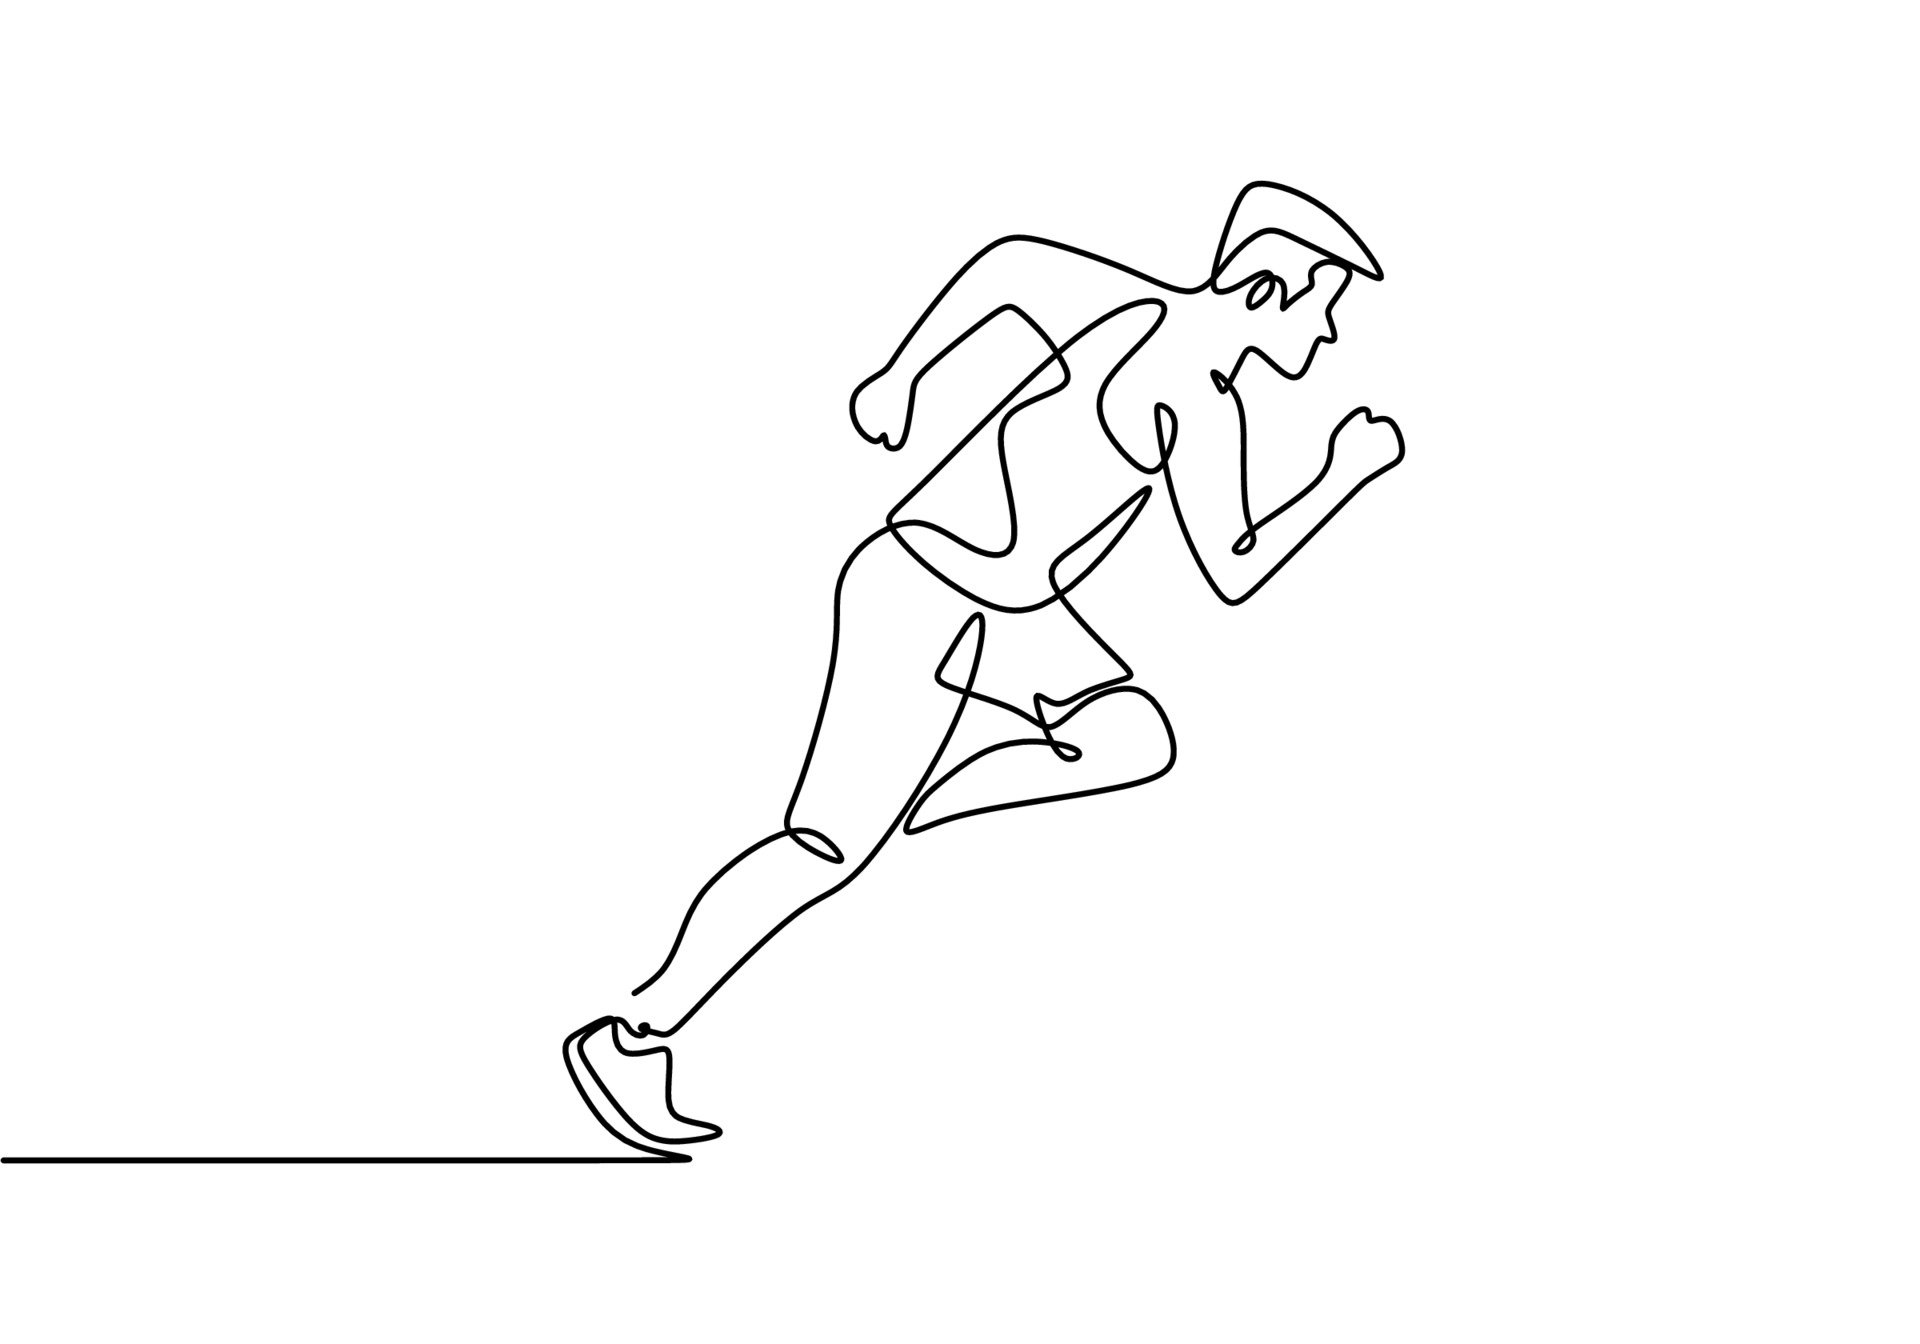 Спорс. Спортсмены в движении. Бегущий человек рисунок. Человек в беге рисунок. Нарисовать бегущего спортсмена.